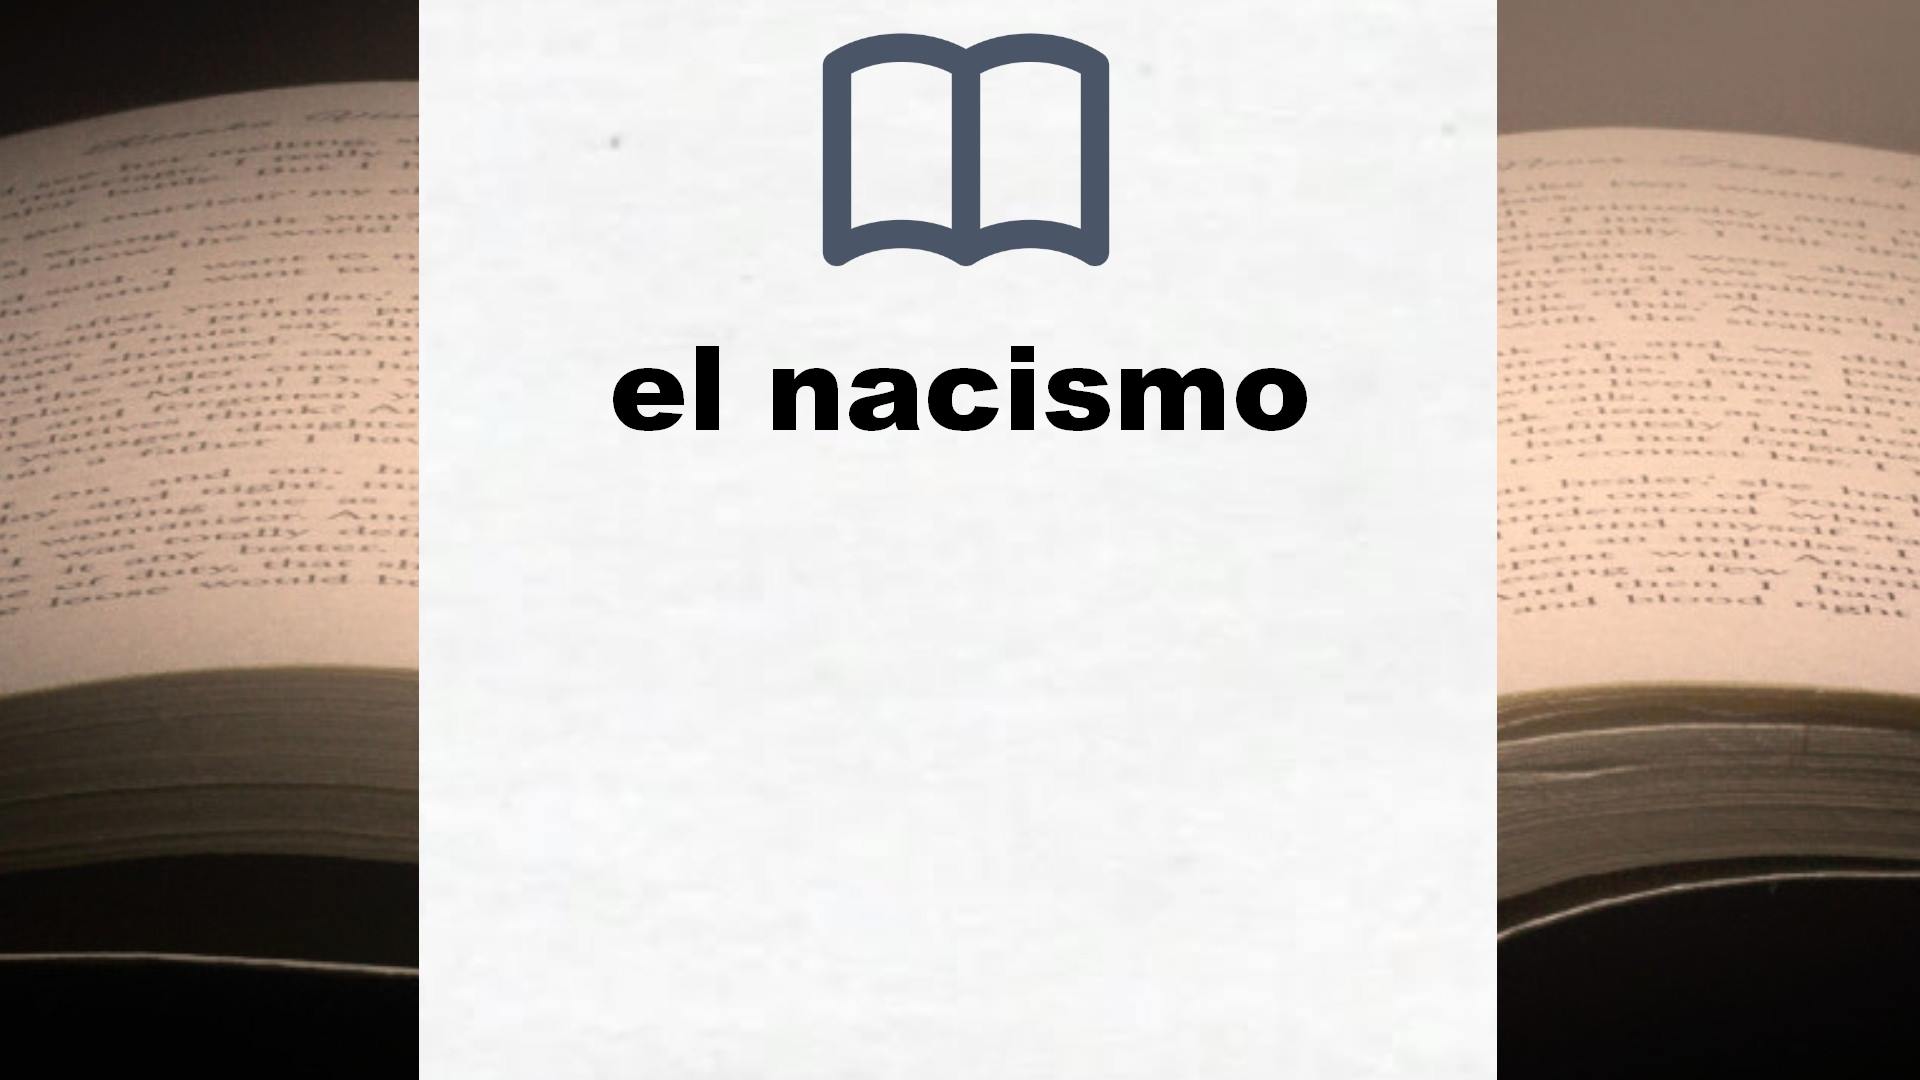 Libros sobre el nacismo